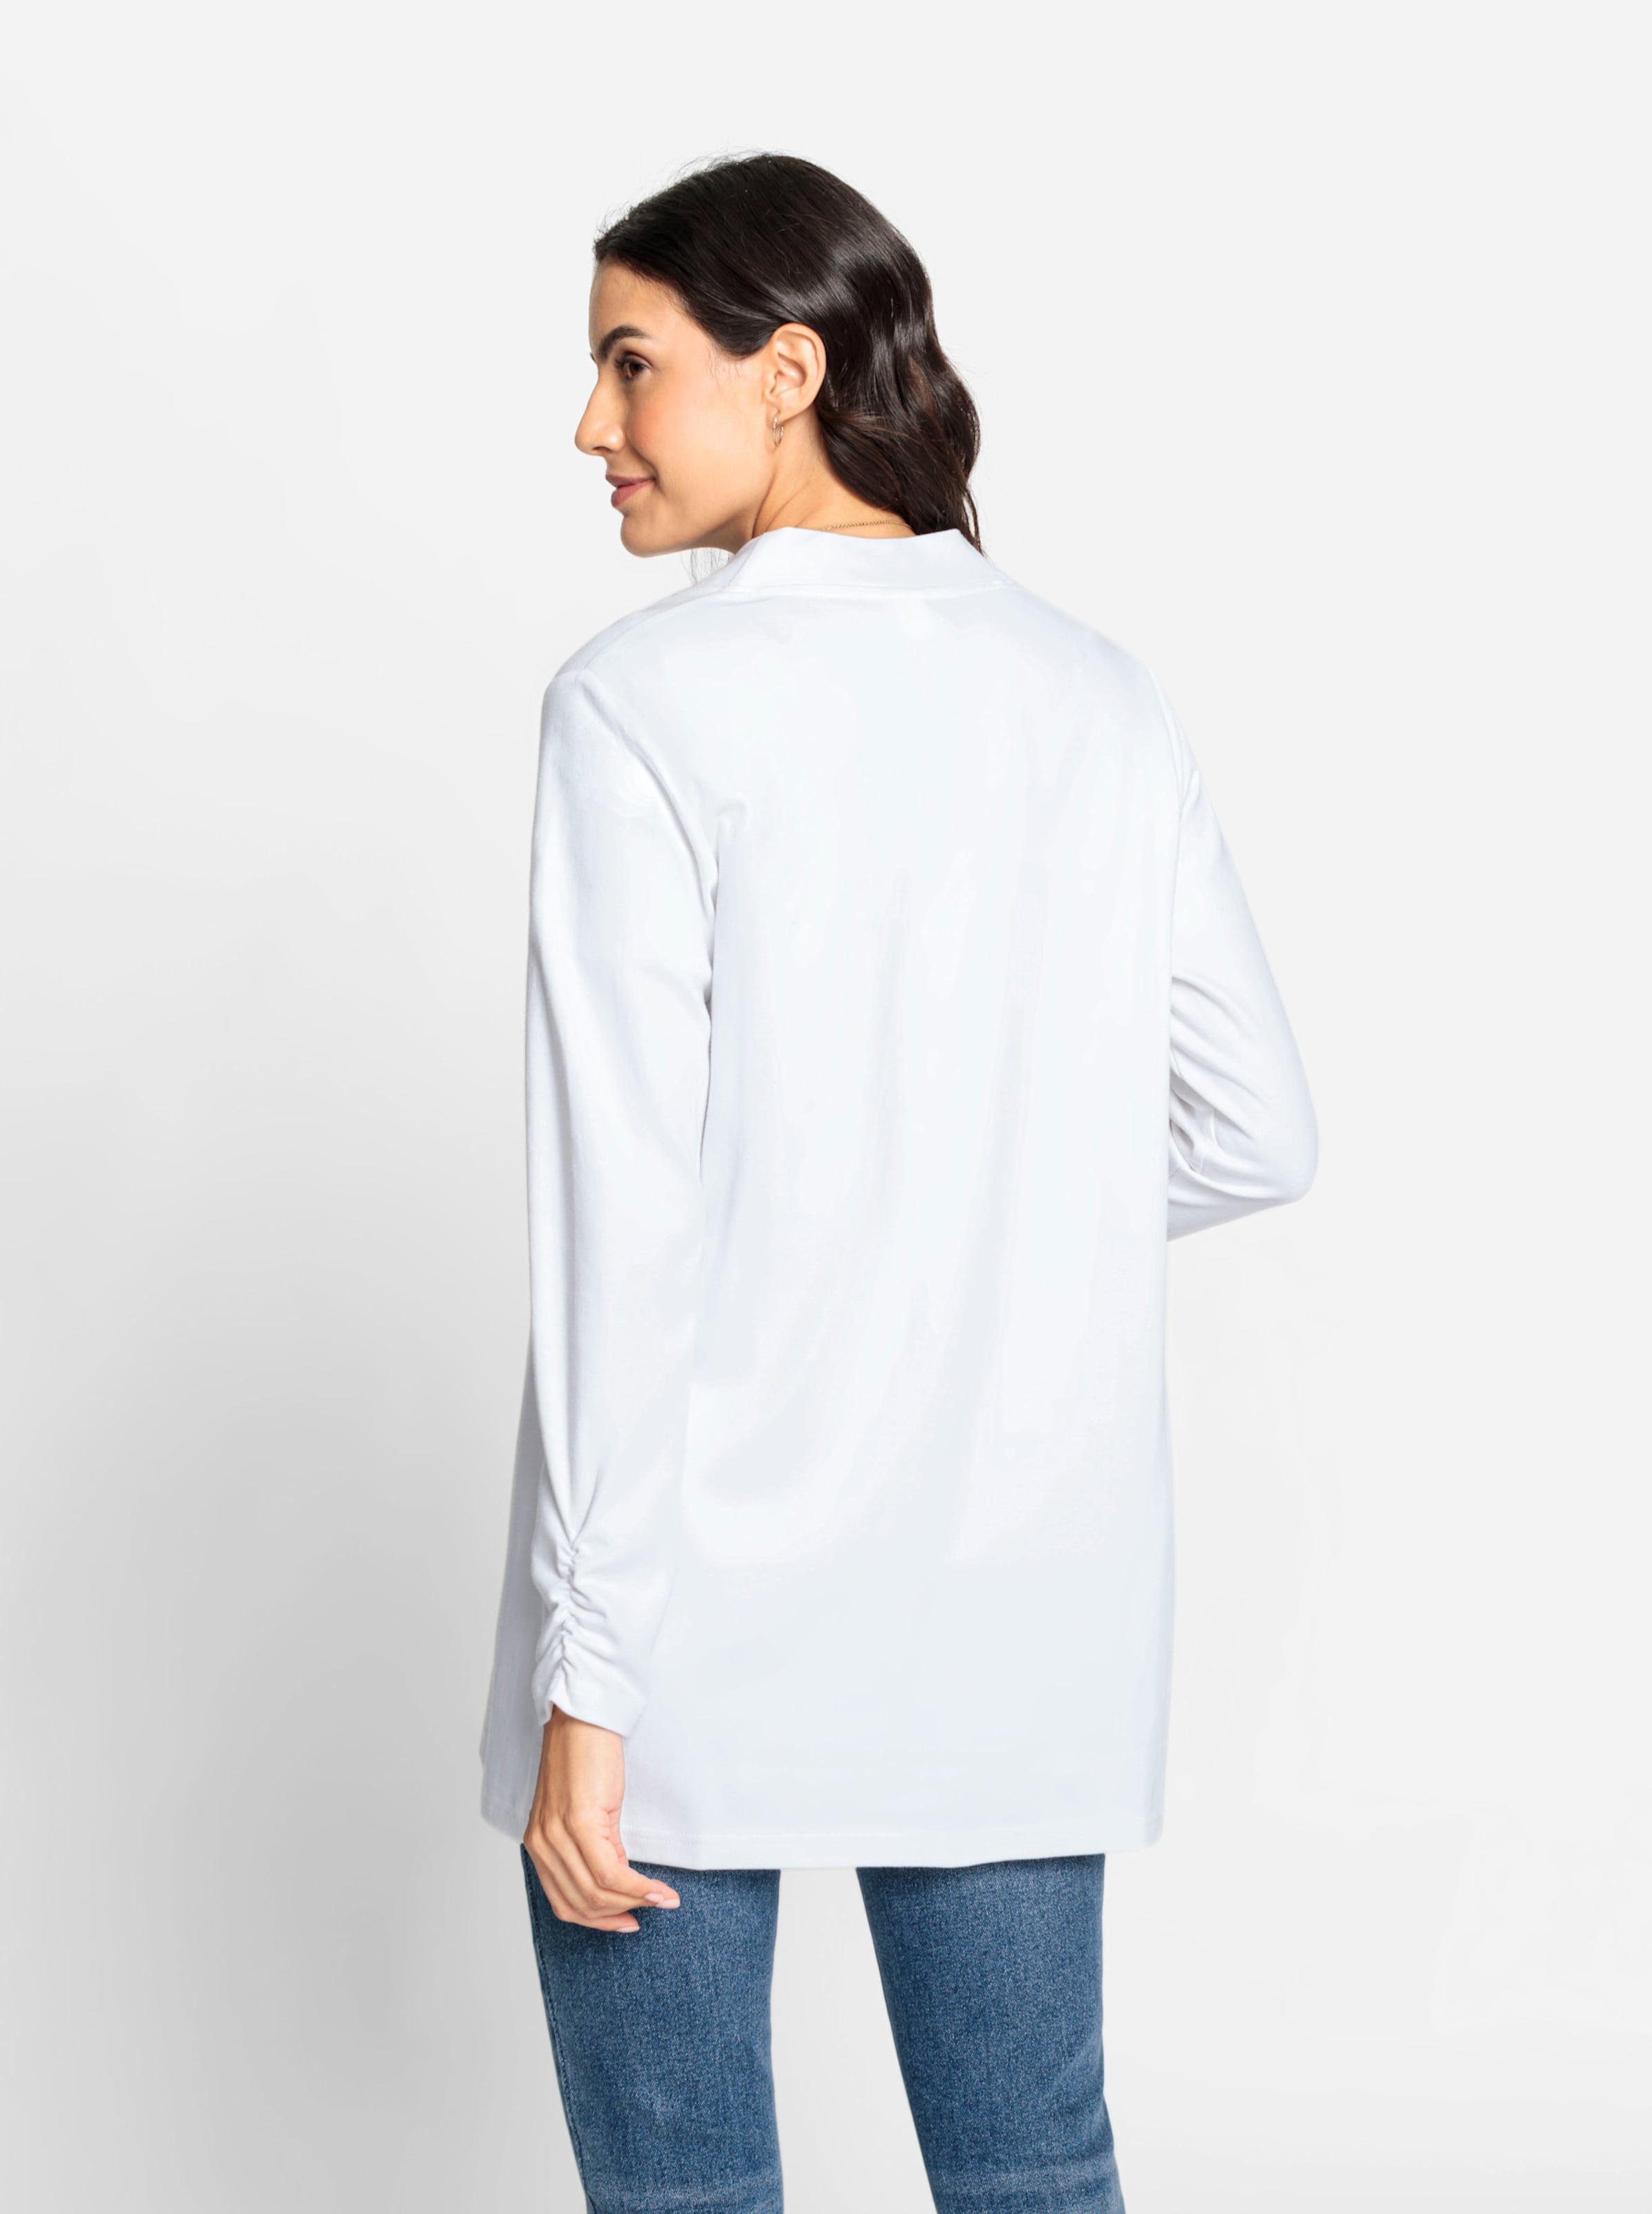 richtige günstig Kaufen-Shirtjacke in weiß von heine. Shirtjacke in weiß von heine <![CDATA[Wenn Sie nach einem Multitalent für Ihre Garderobe suchen, dann ist die Shirtjacke genau die Richtige! In offener, etwas längerer Form mit Raffung am Abschluss der langen Ärm